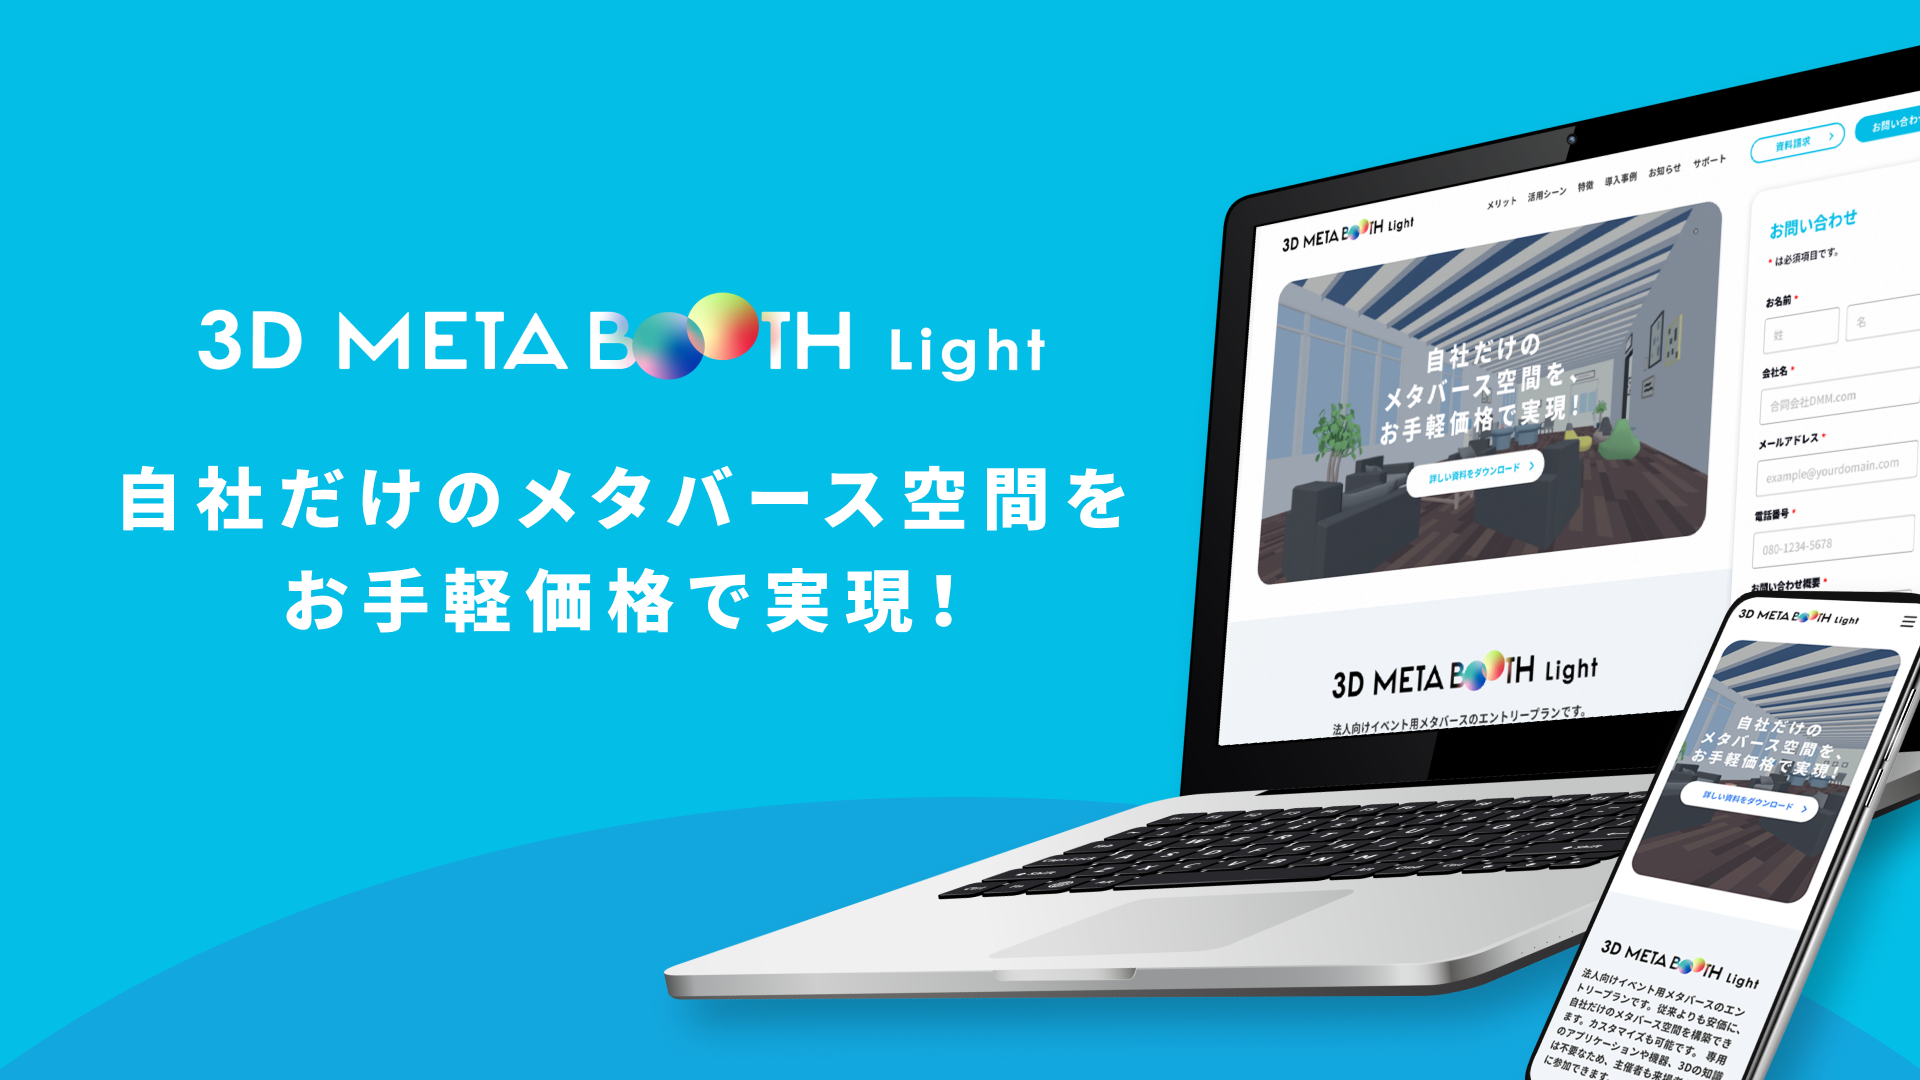 従来よりも安価に自社だけのメタバース空間を構築できるプラットフォーム「3D META BOOTH Light」リリースのお知らせ